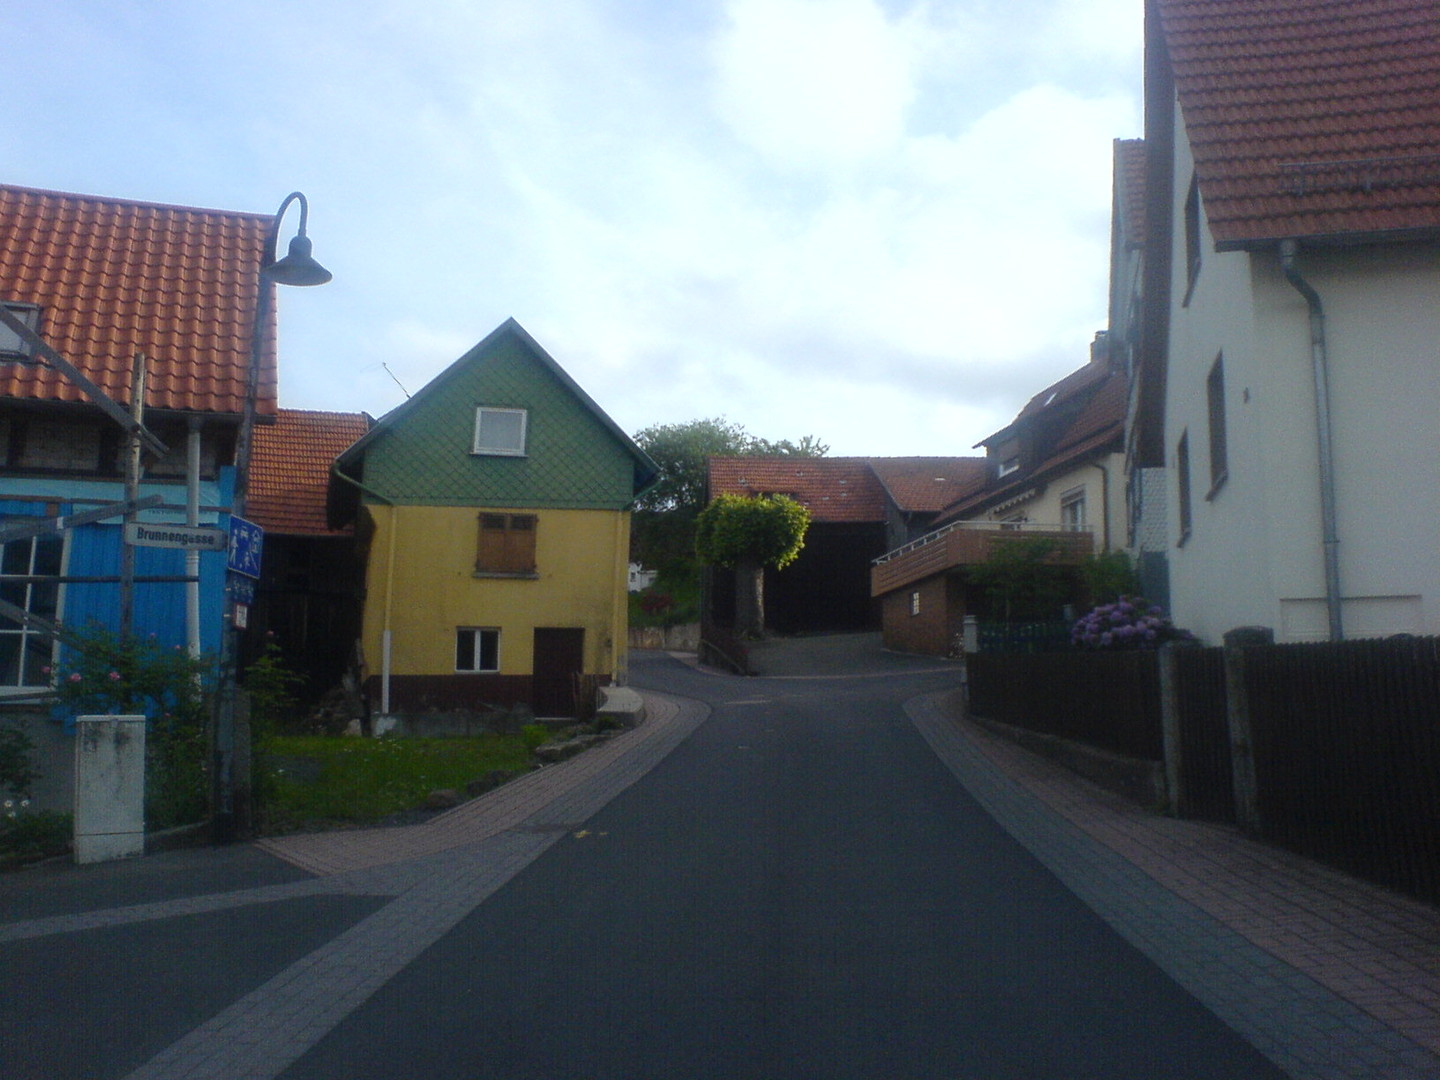 Durch eine enge Gasse führt die Straße durch Hettenhausen